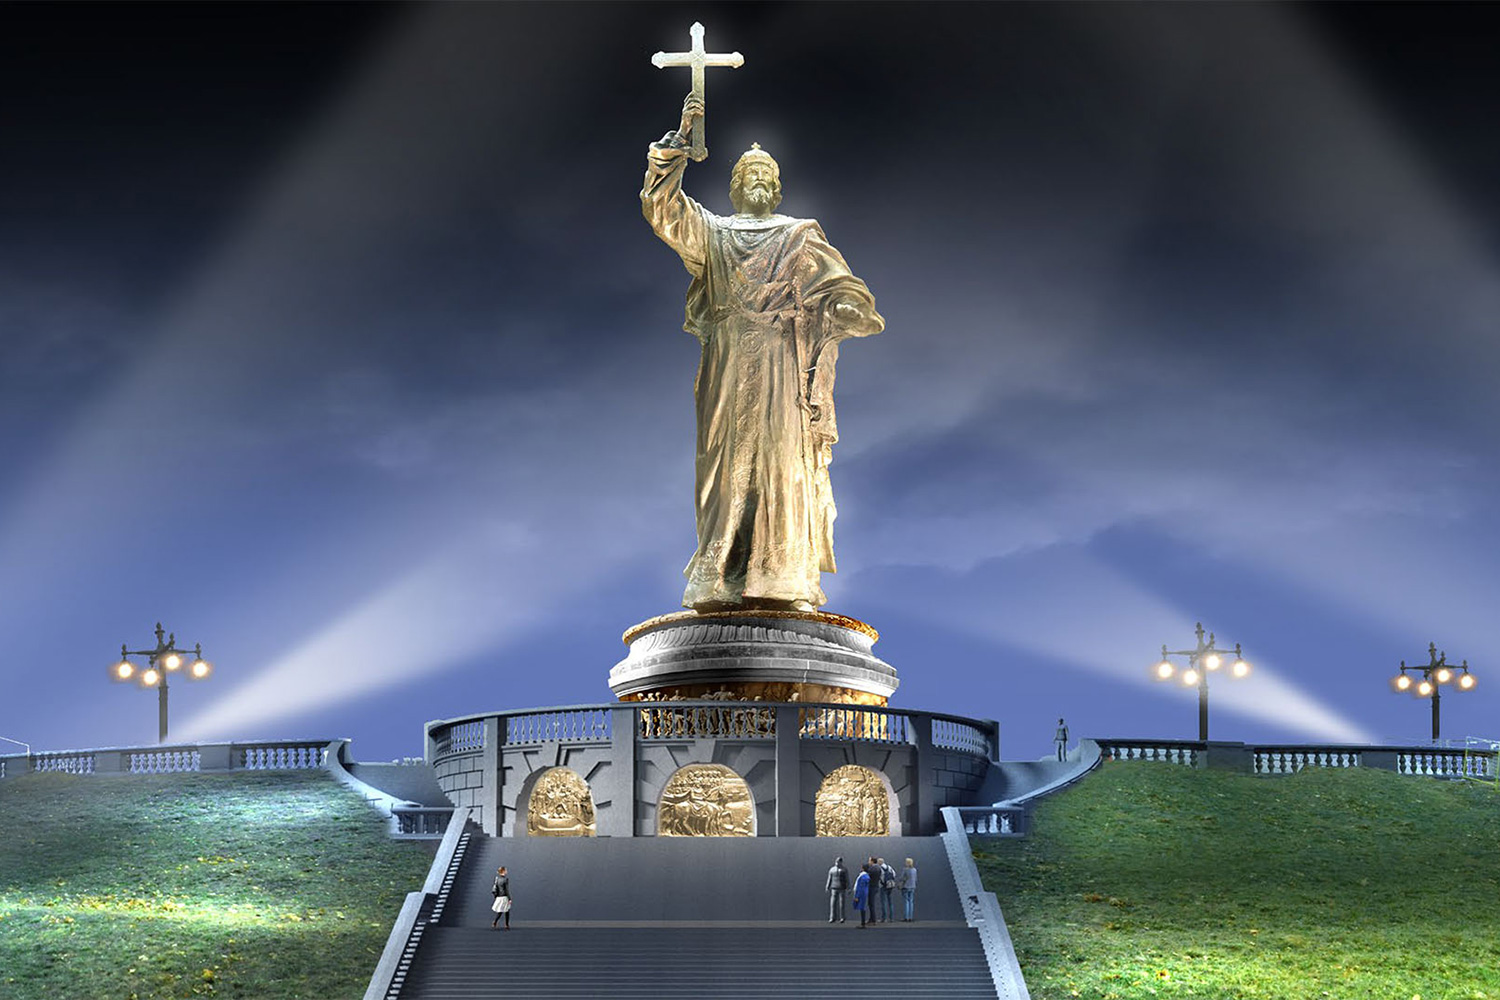 москва боровицкая площадь памятник владимиру